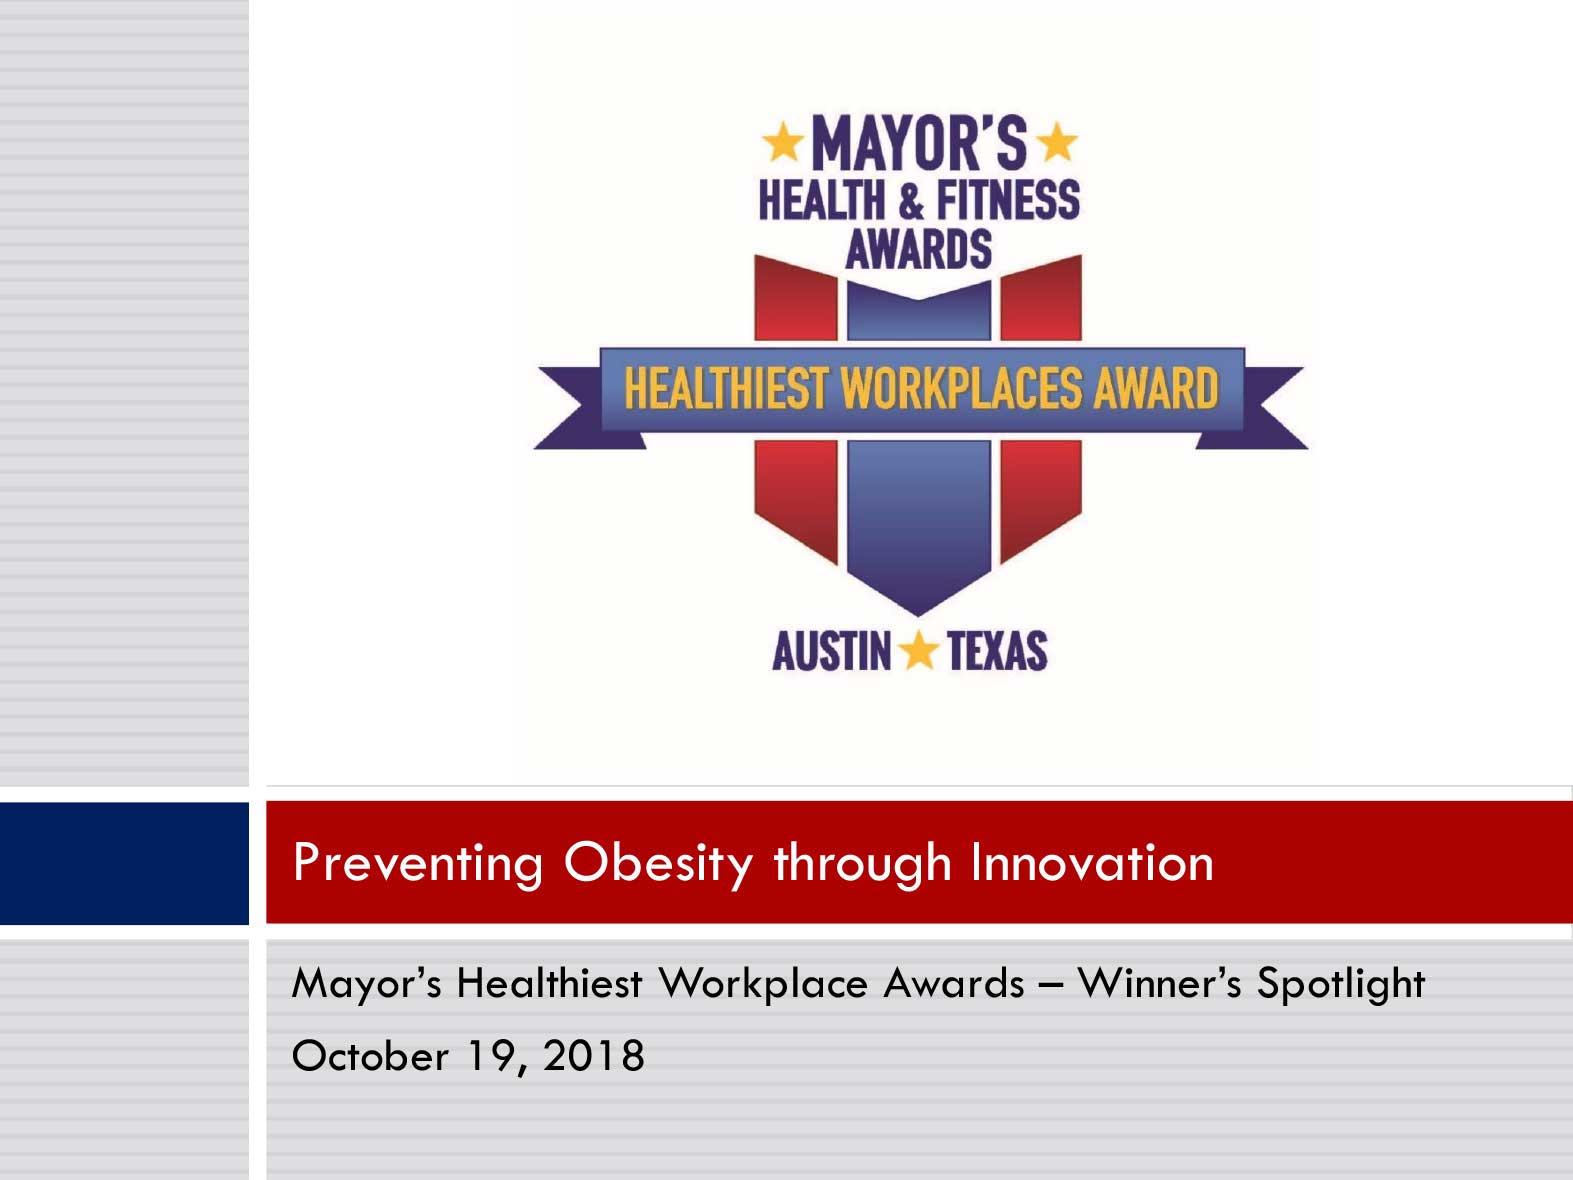 Winner's Spotlight - Preventing Obesity through Innovation